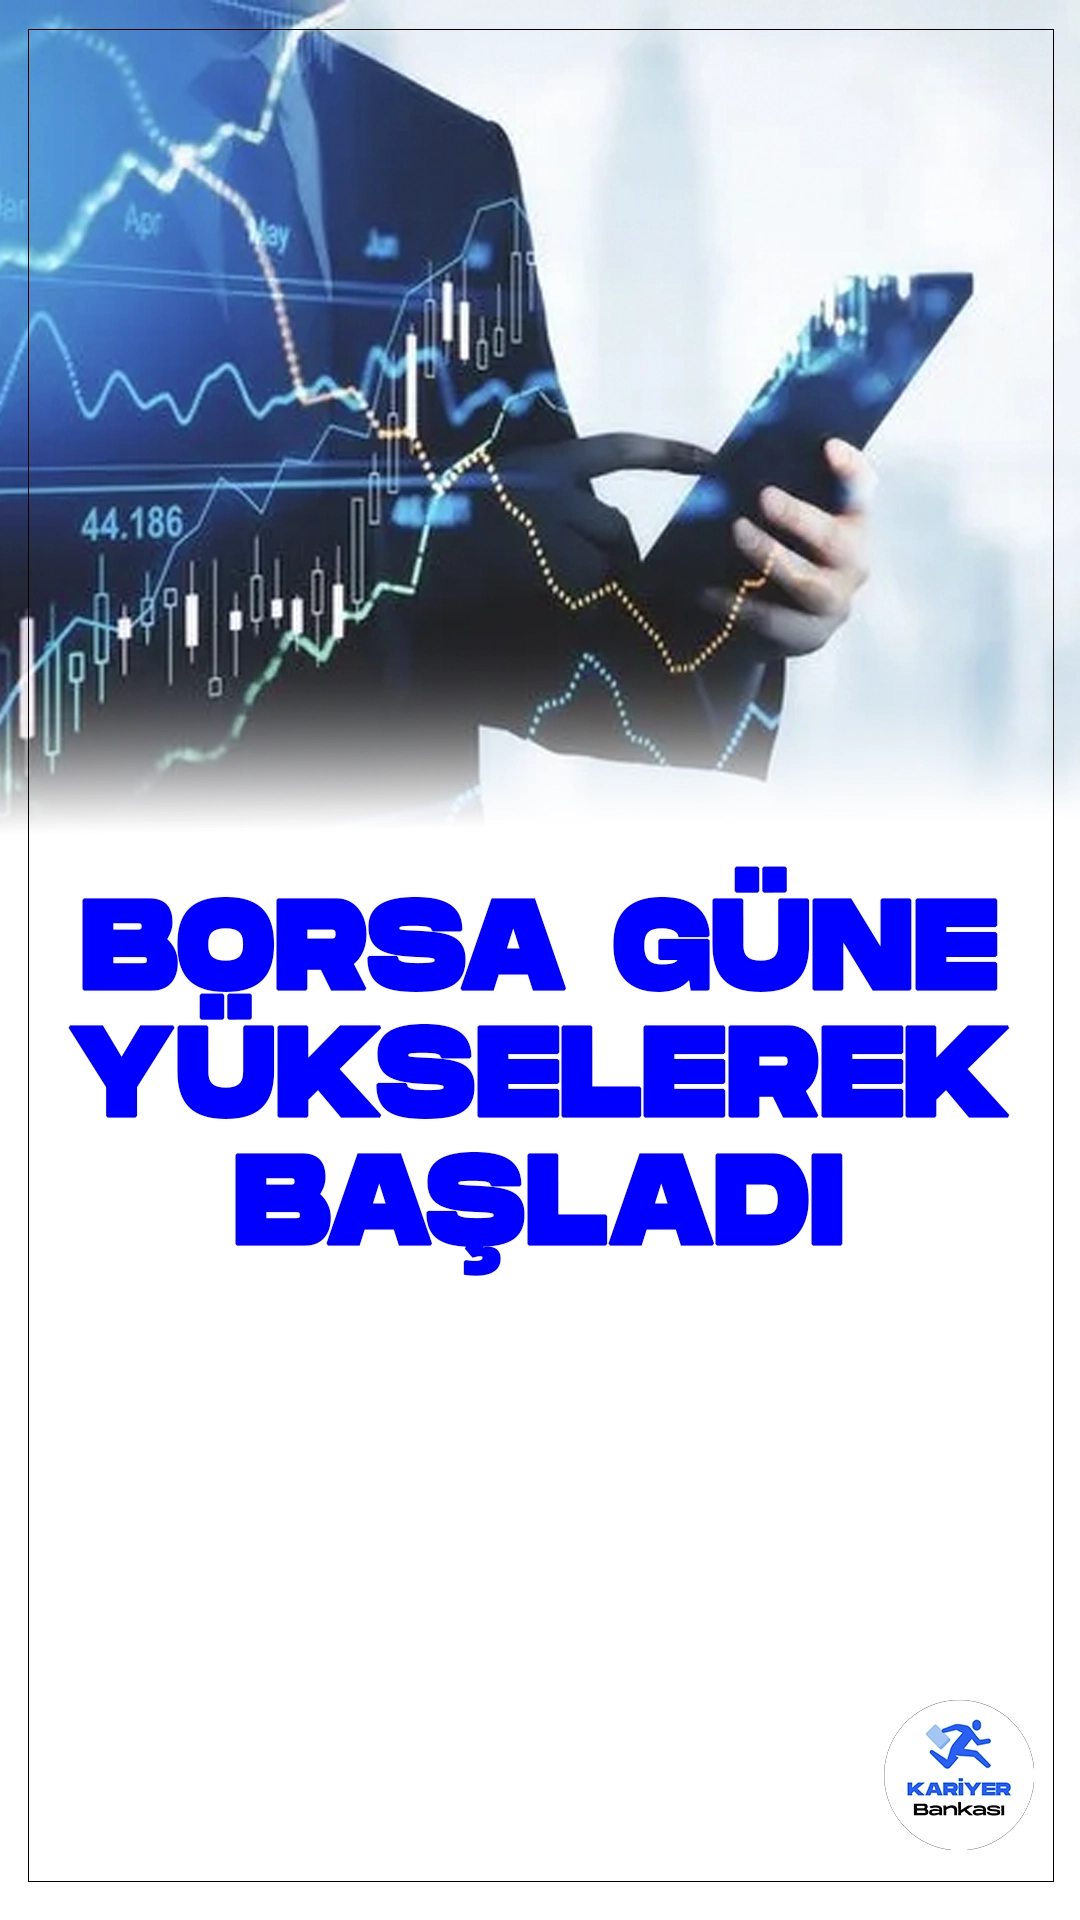 Borsa İstanbul'da Güne Yükselişle Başlangıç.Borsa İstanbul, güne yüzde 0,51 artışla başladı ve BIST 100 endeksi 10.097,39 puandan işlem görmeye başladı. Bankacılık endeksi yüzde 0,28, holding endeksi ise yüzde 0,16 artış kaydetti. Sektörler arasında en fazla kazanan, yüzde 1,09'la tekstil deri olurken, en çok kaybeden ise yüzde 2,95'le spor sektörü oldu.